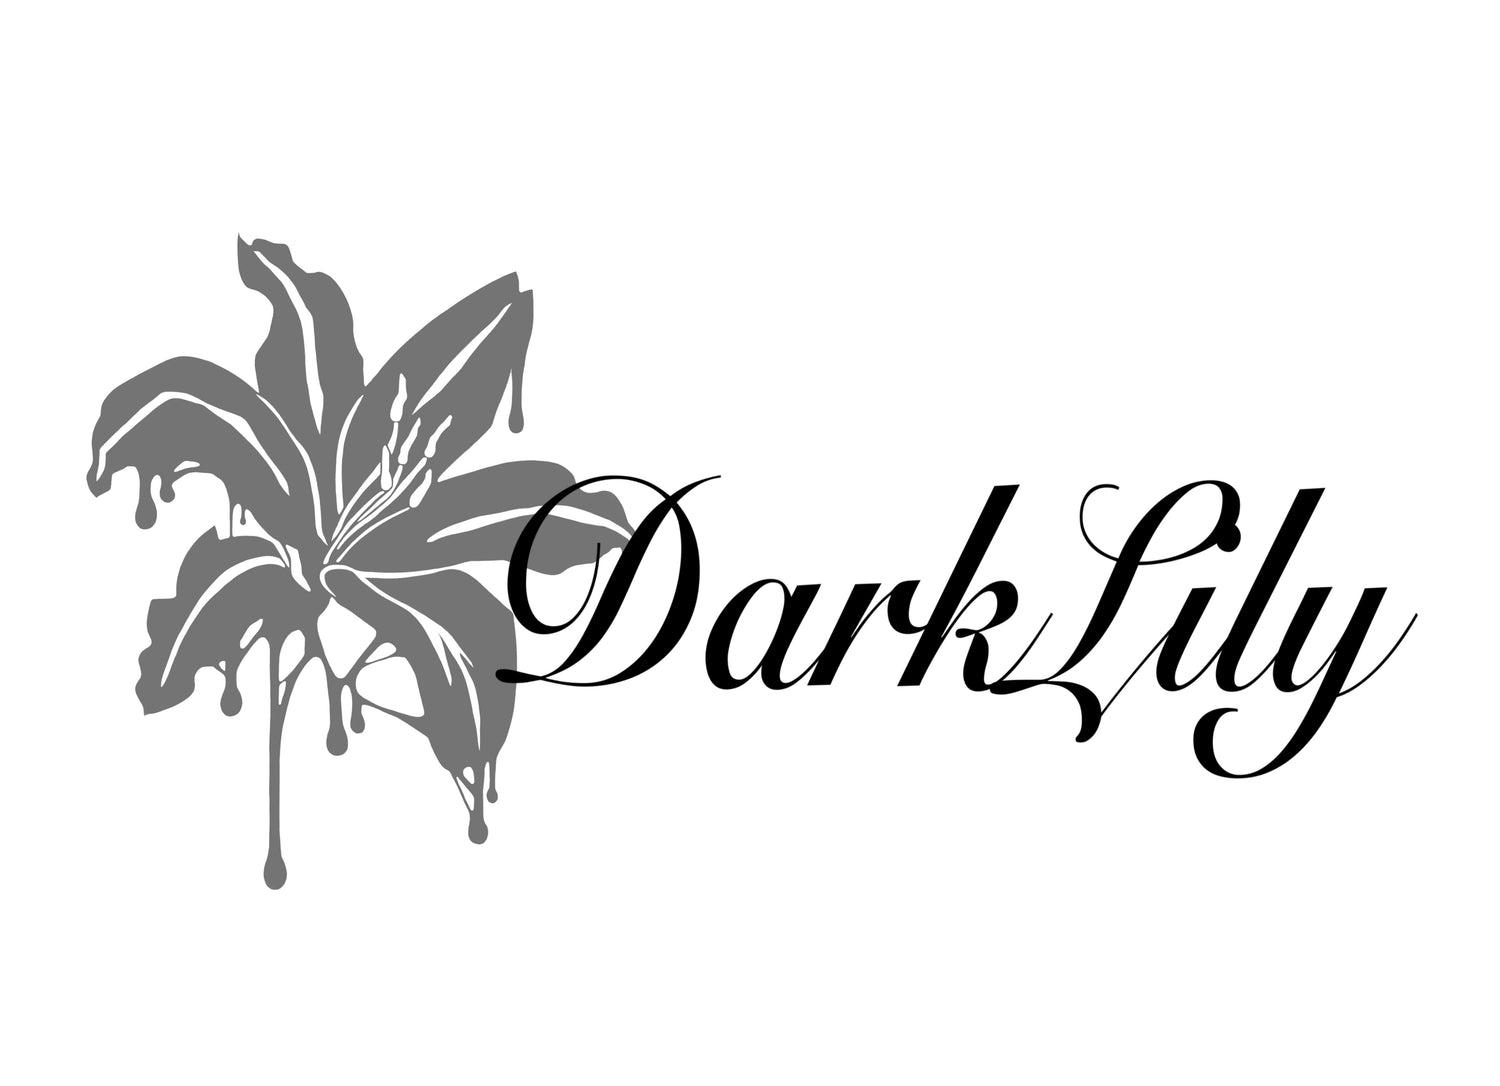 Dark Lily